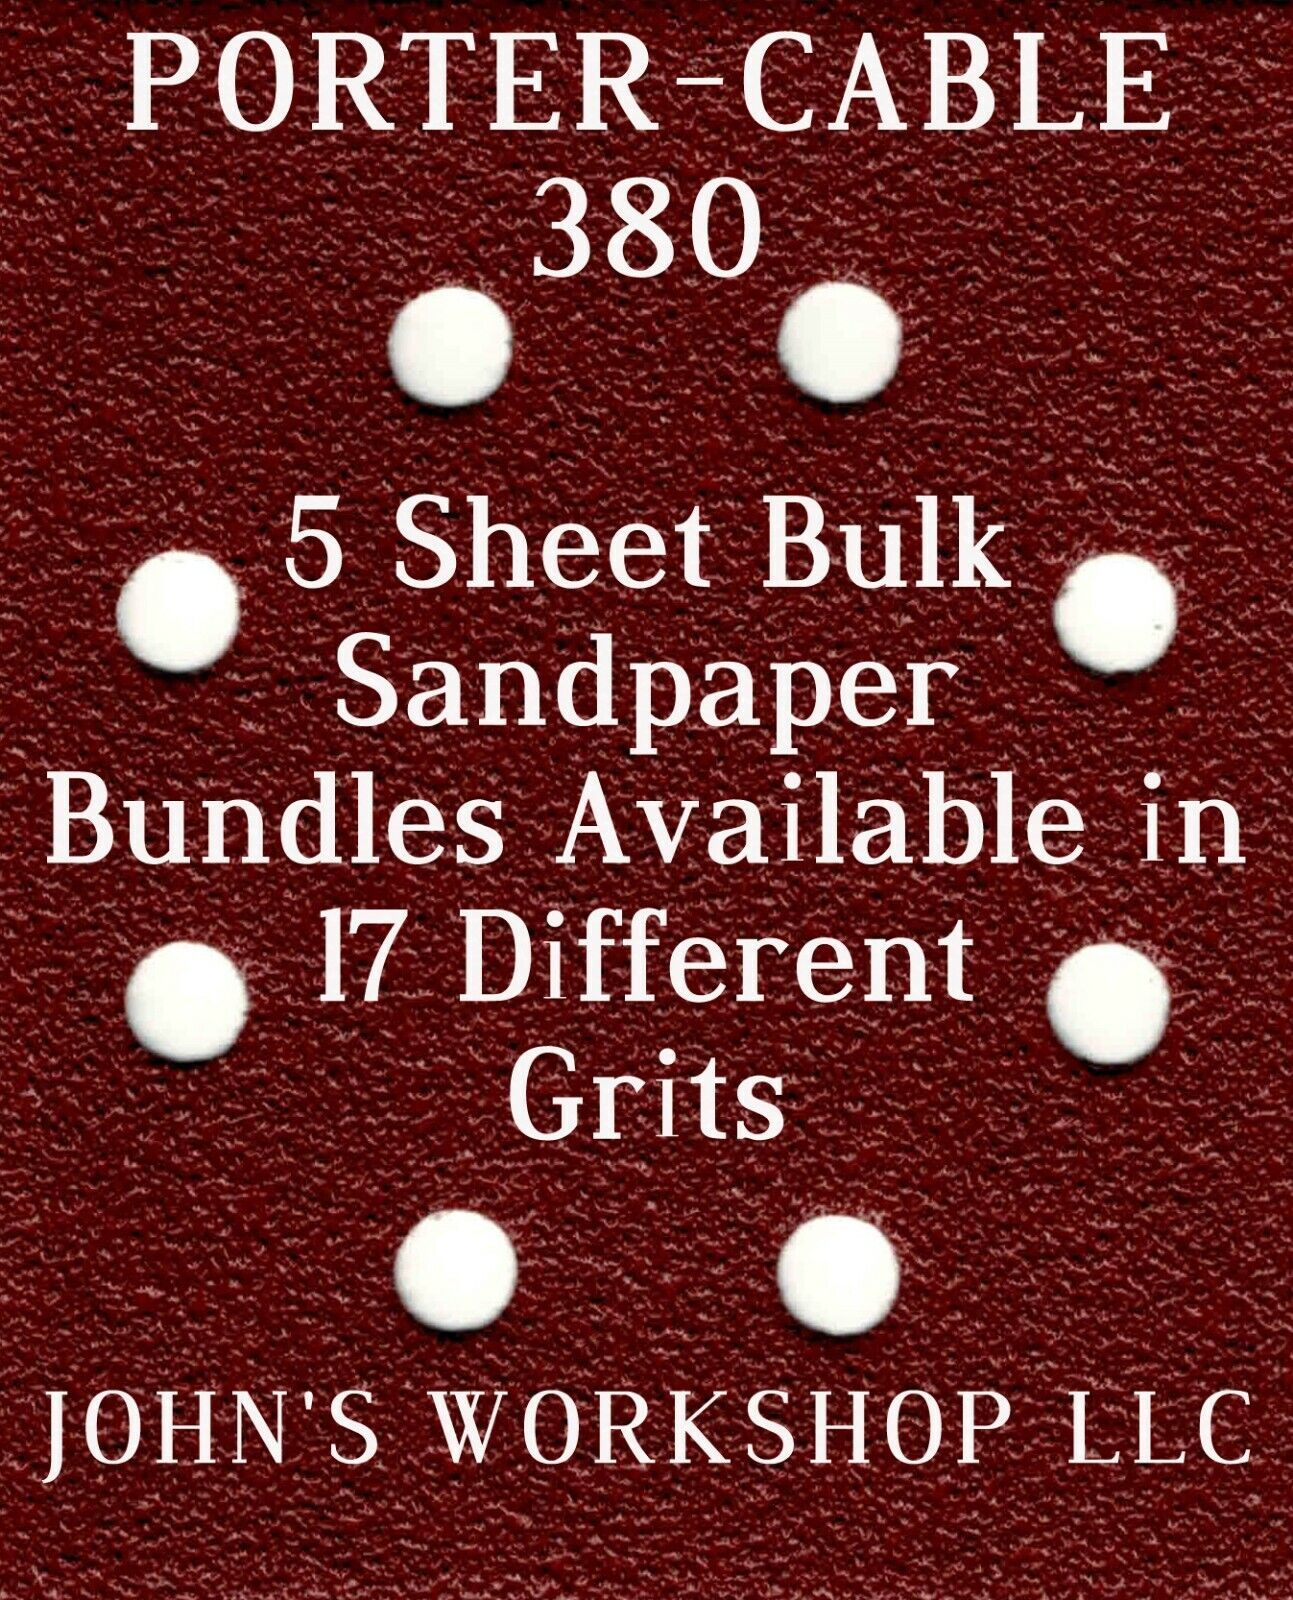 PORTER-CABLE 380 - 1/4 Sheet - 17 Grits - No-Slip - 5 Sandpaper Bulk Bundles - $4.99